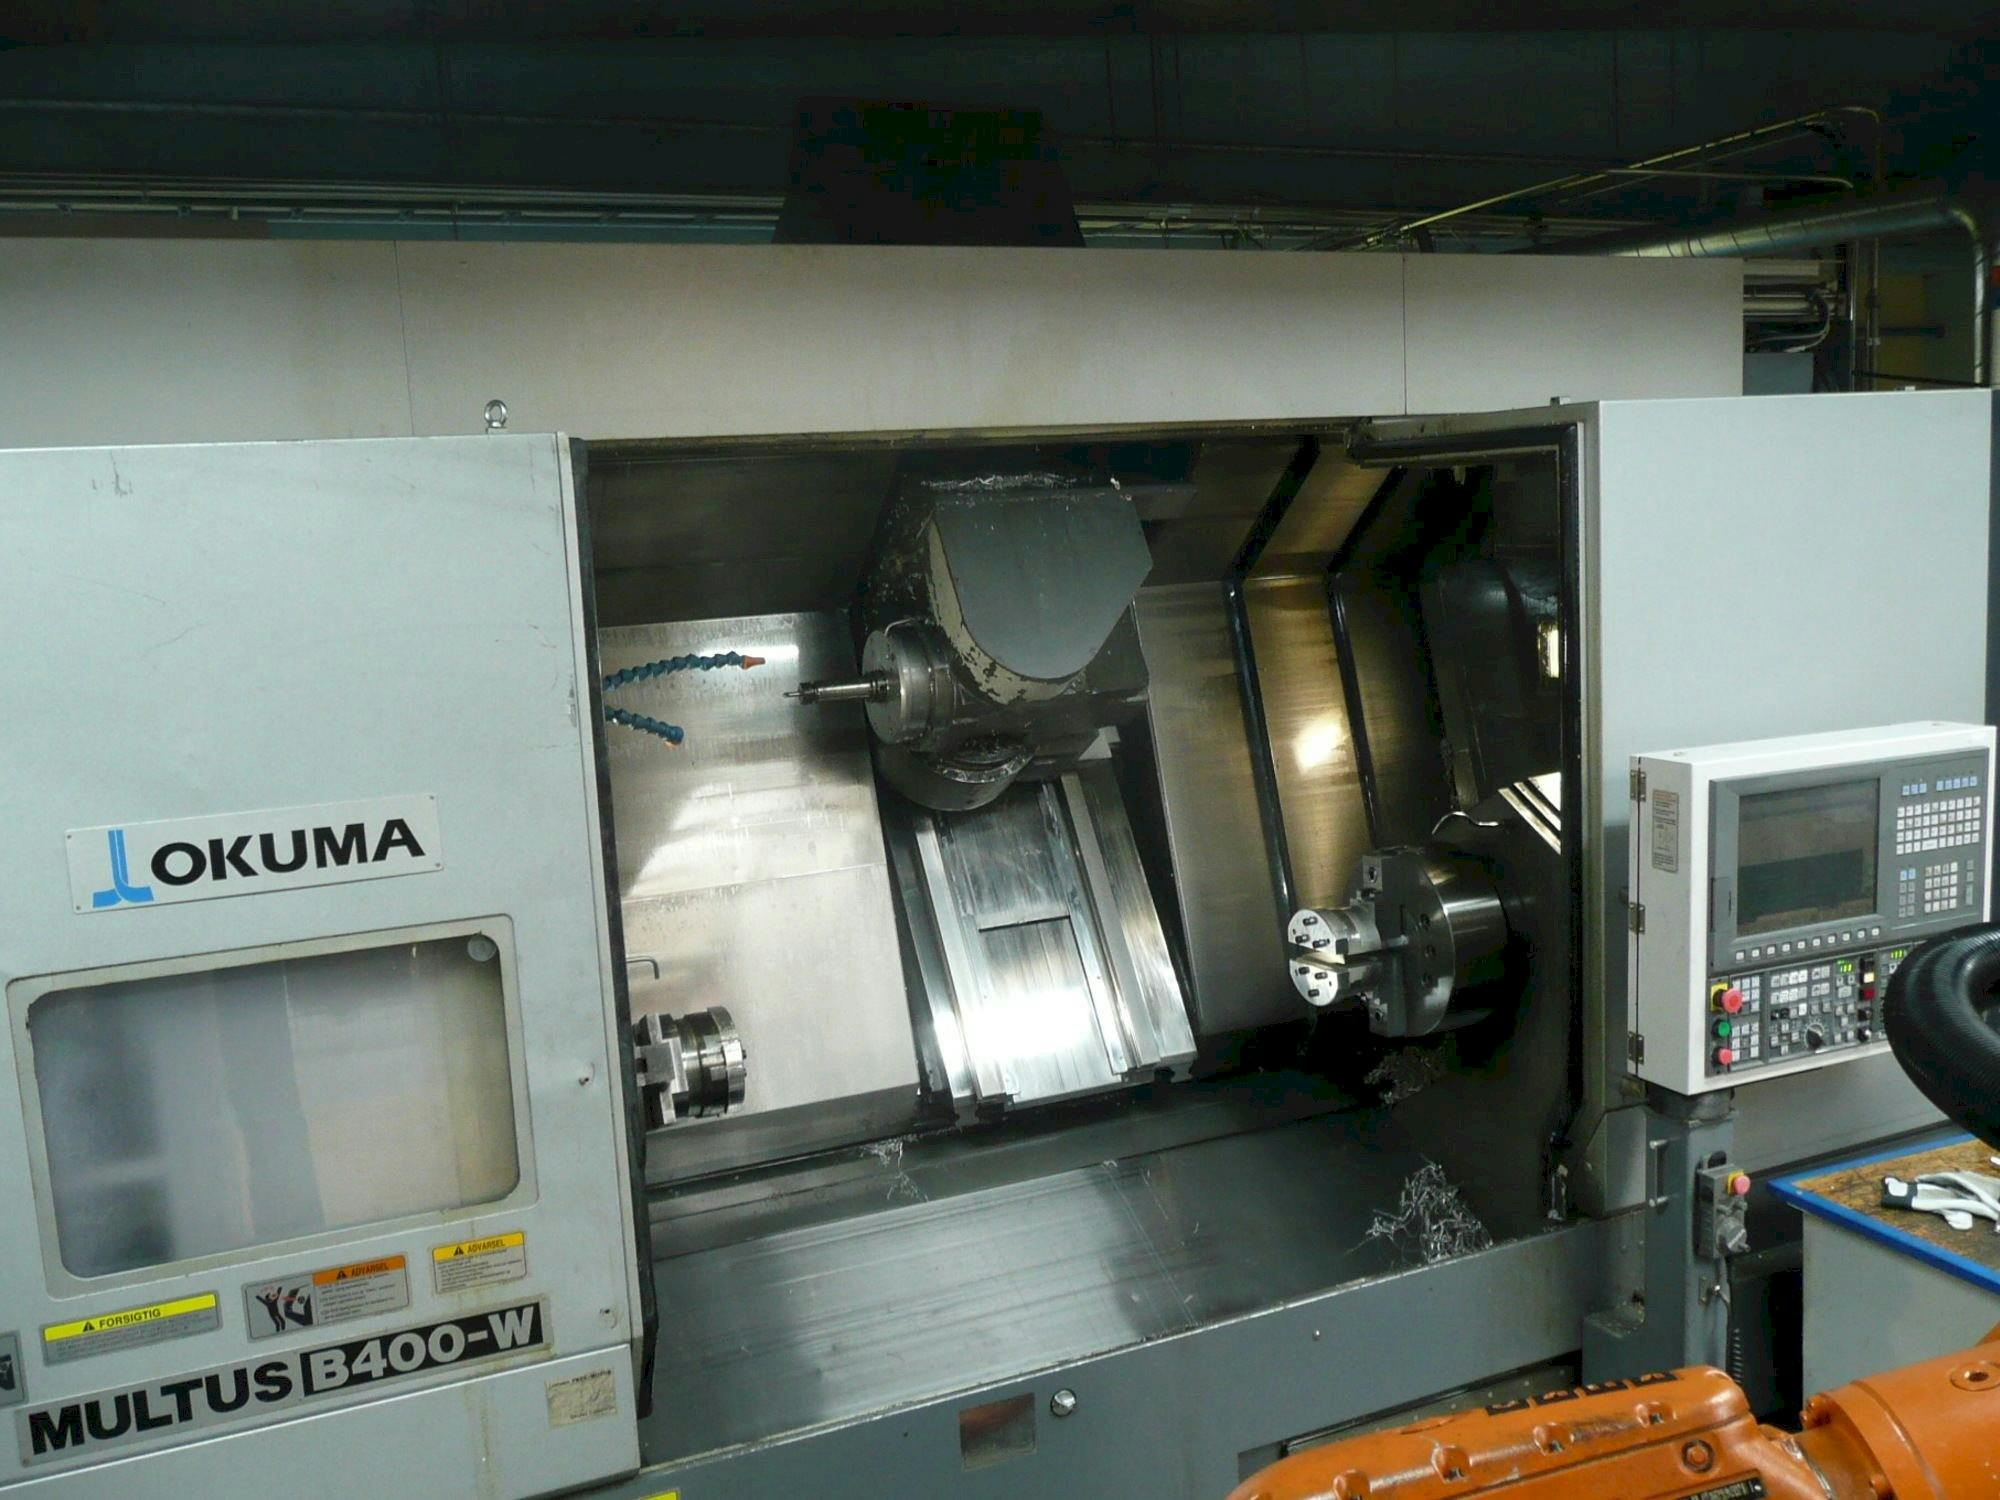 Vista frontal de la máquina Okuma MULTUS B400-W